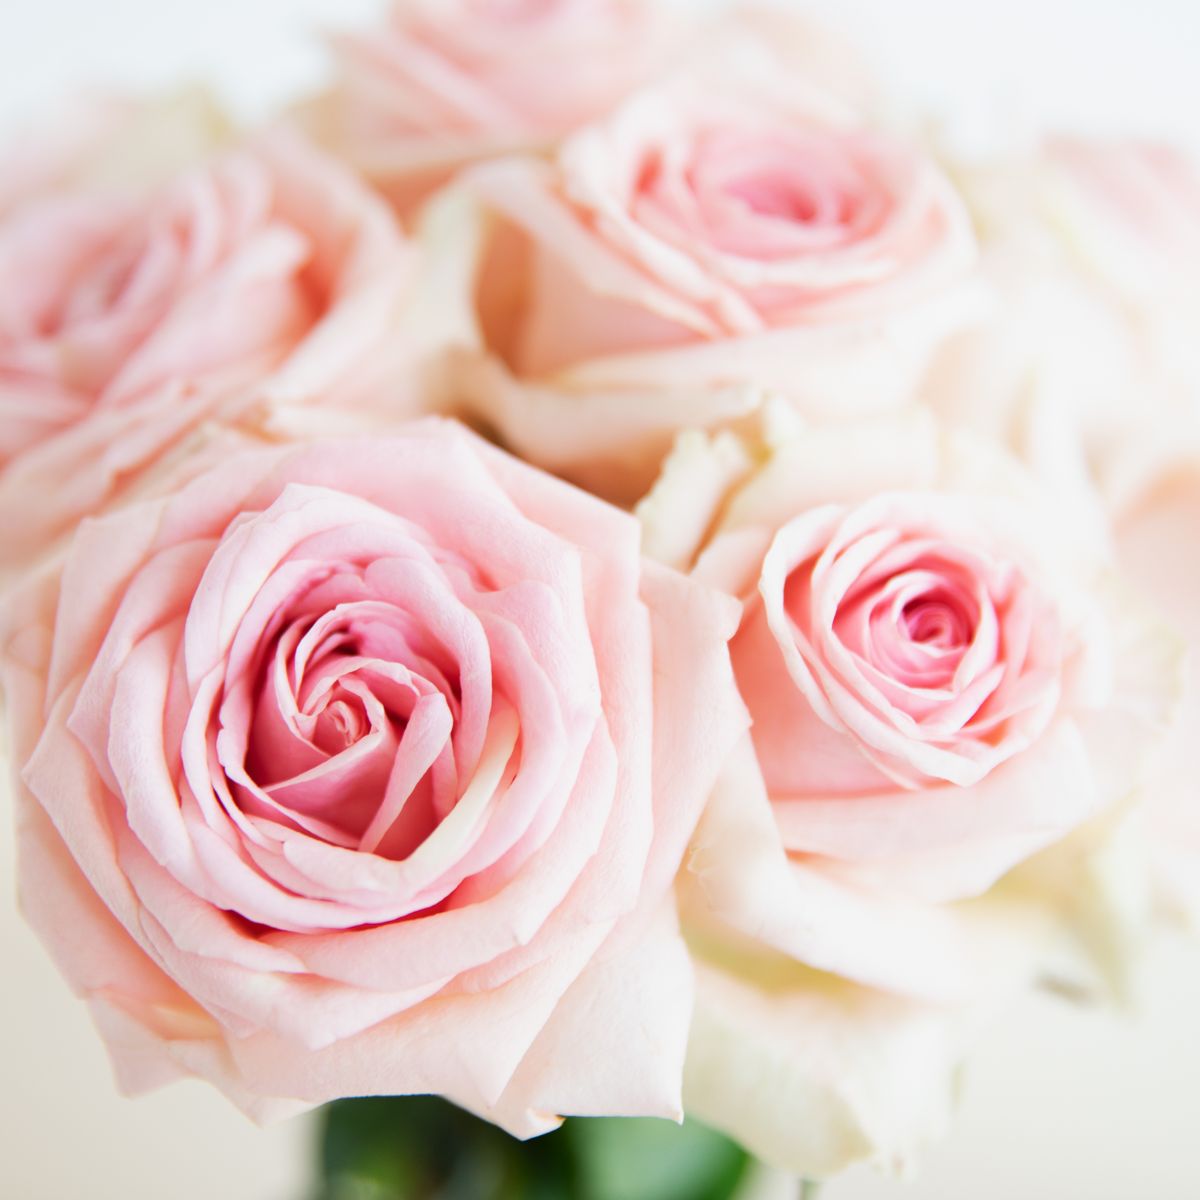 Bouquet di fiori artificiali: Bello e romantico, perfetto per San Valentino